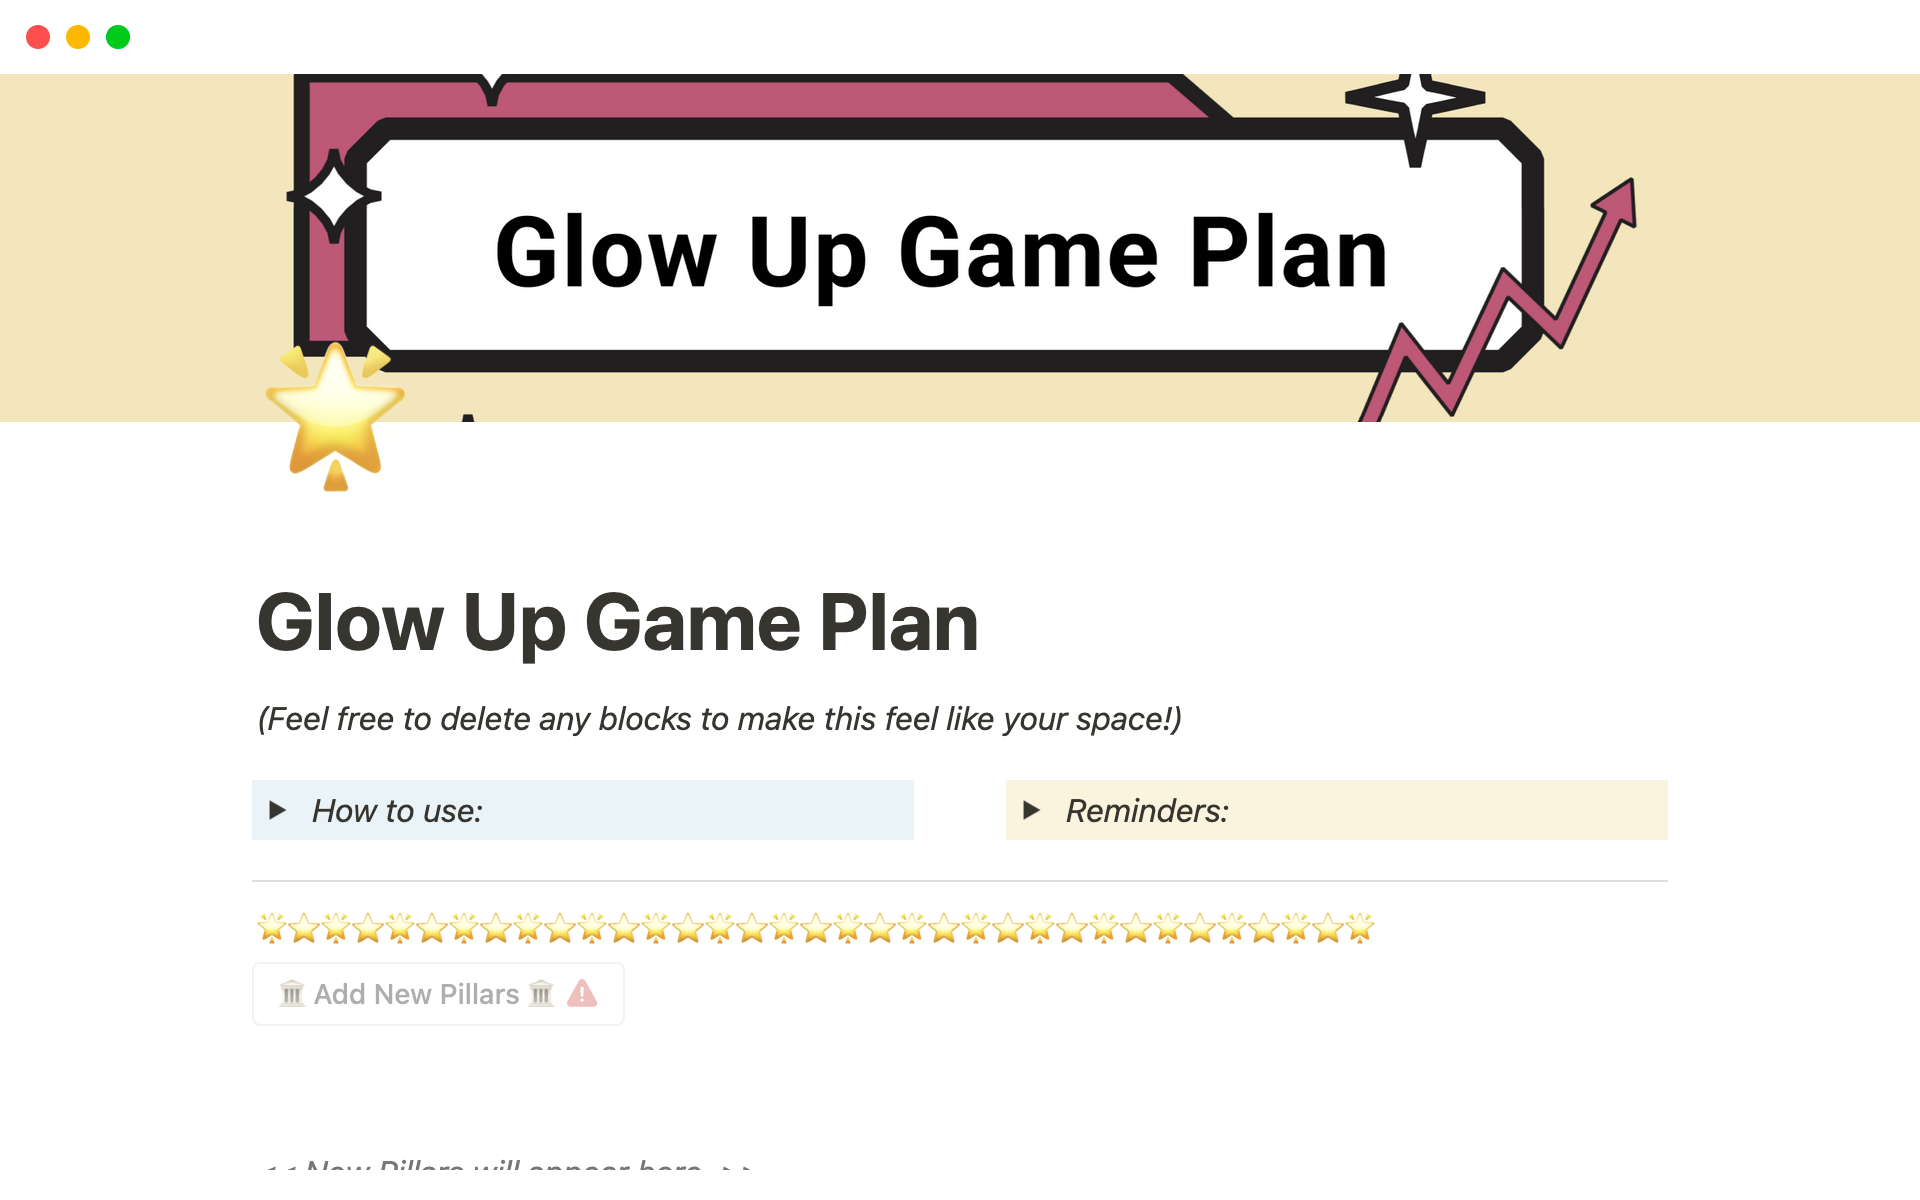 Vista previa de plantilla para Glow Up Game Plan